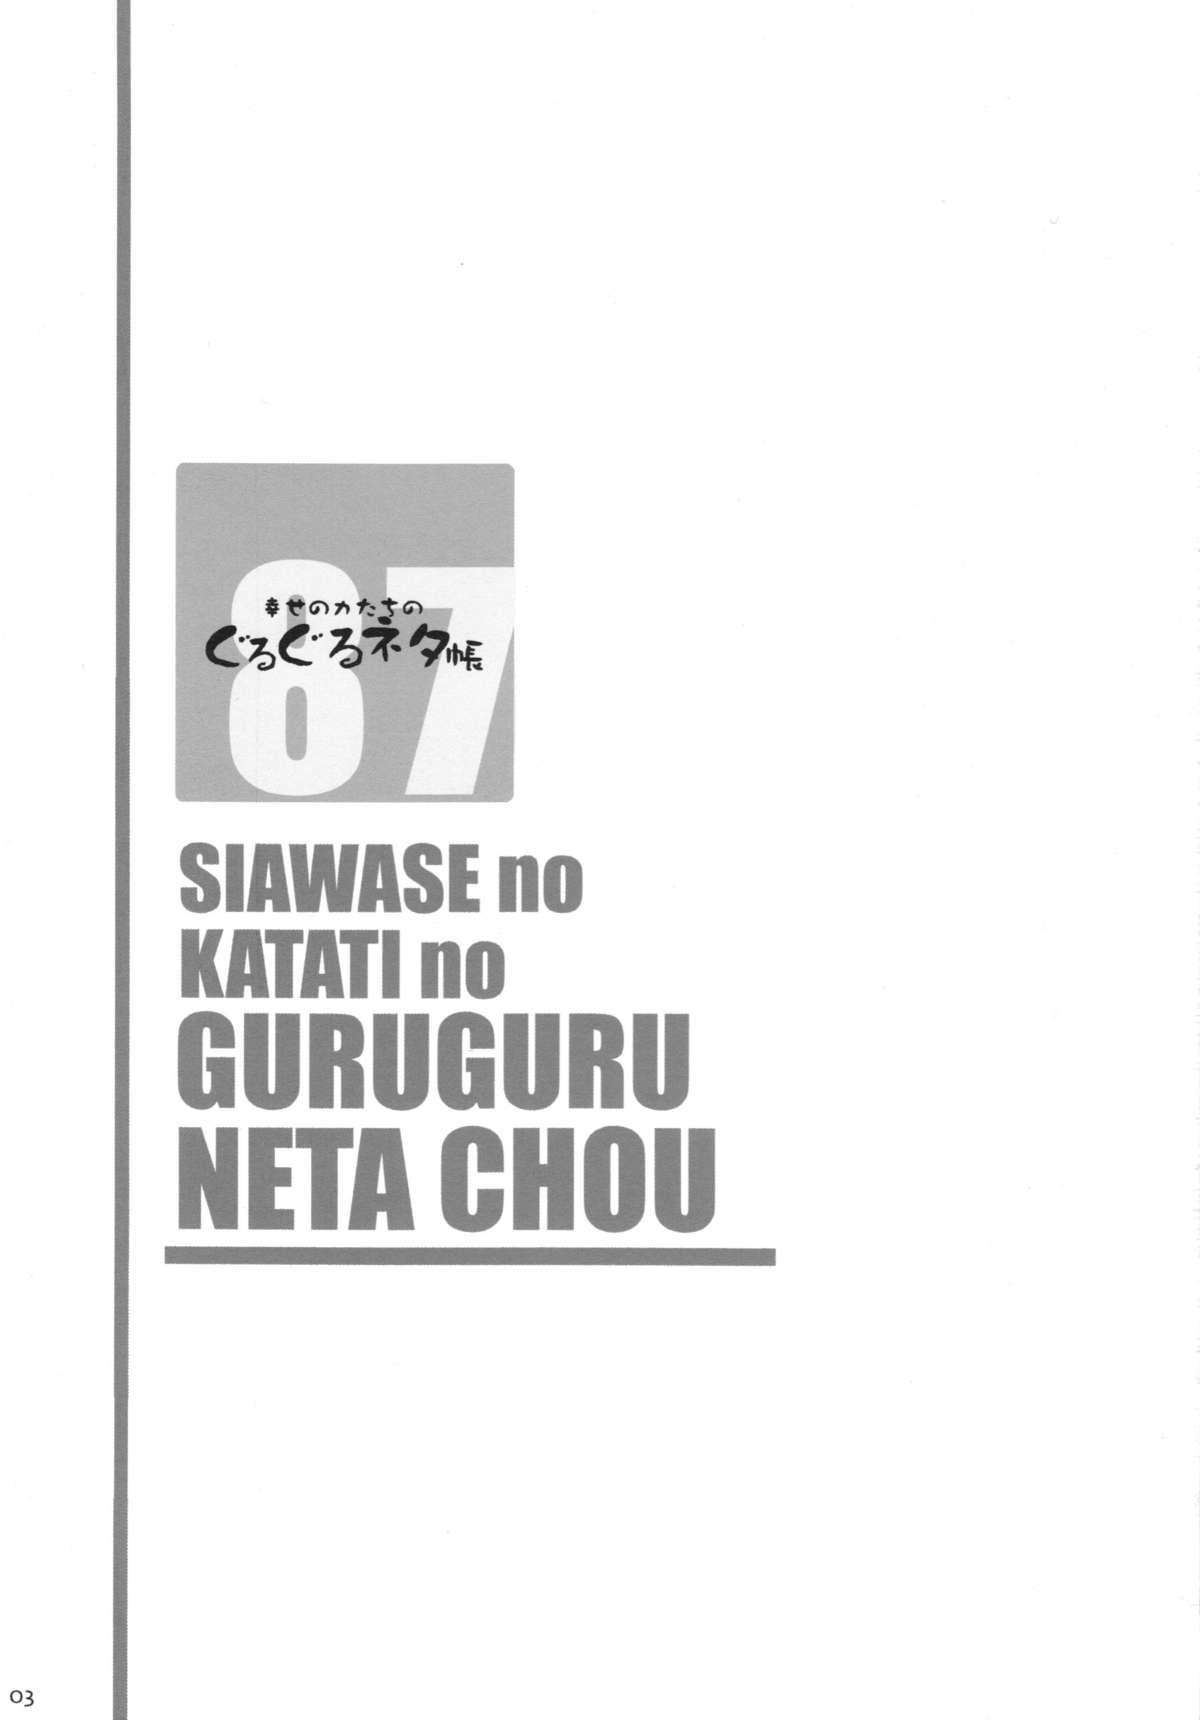 Shiawase no Katachi no Guruguru Netachou 87 Juukan AV Ninshin Shuusan Satsuei 2